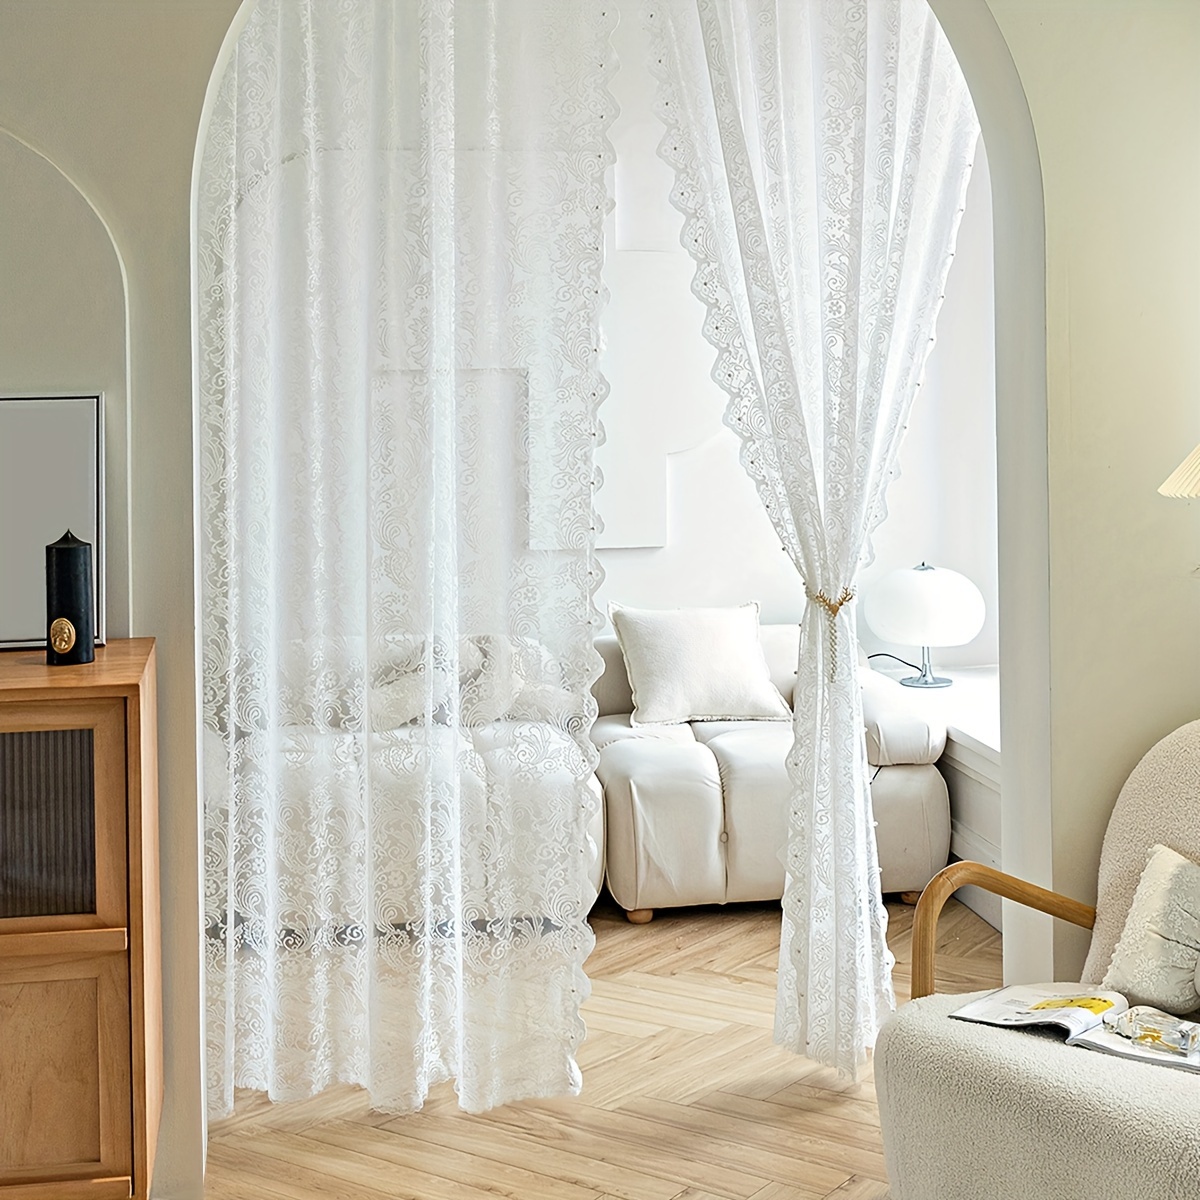 Kaufe Fenstervorhang, attraktiv, gute Luftdurchlässigkeit, einfache  Installation, transparenter Vorhang, Esszimmer, Badezimmer, Spitze,  transparenter Vorhang, Fenstervorhang